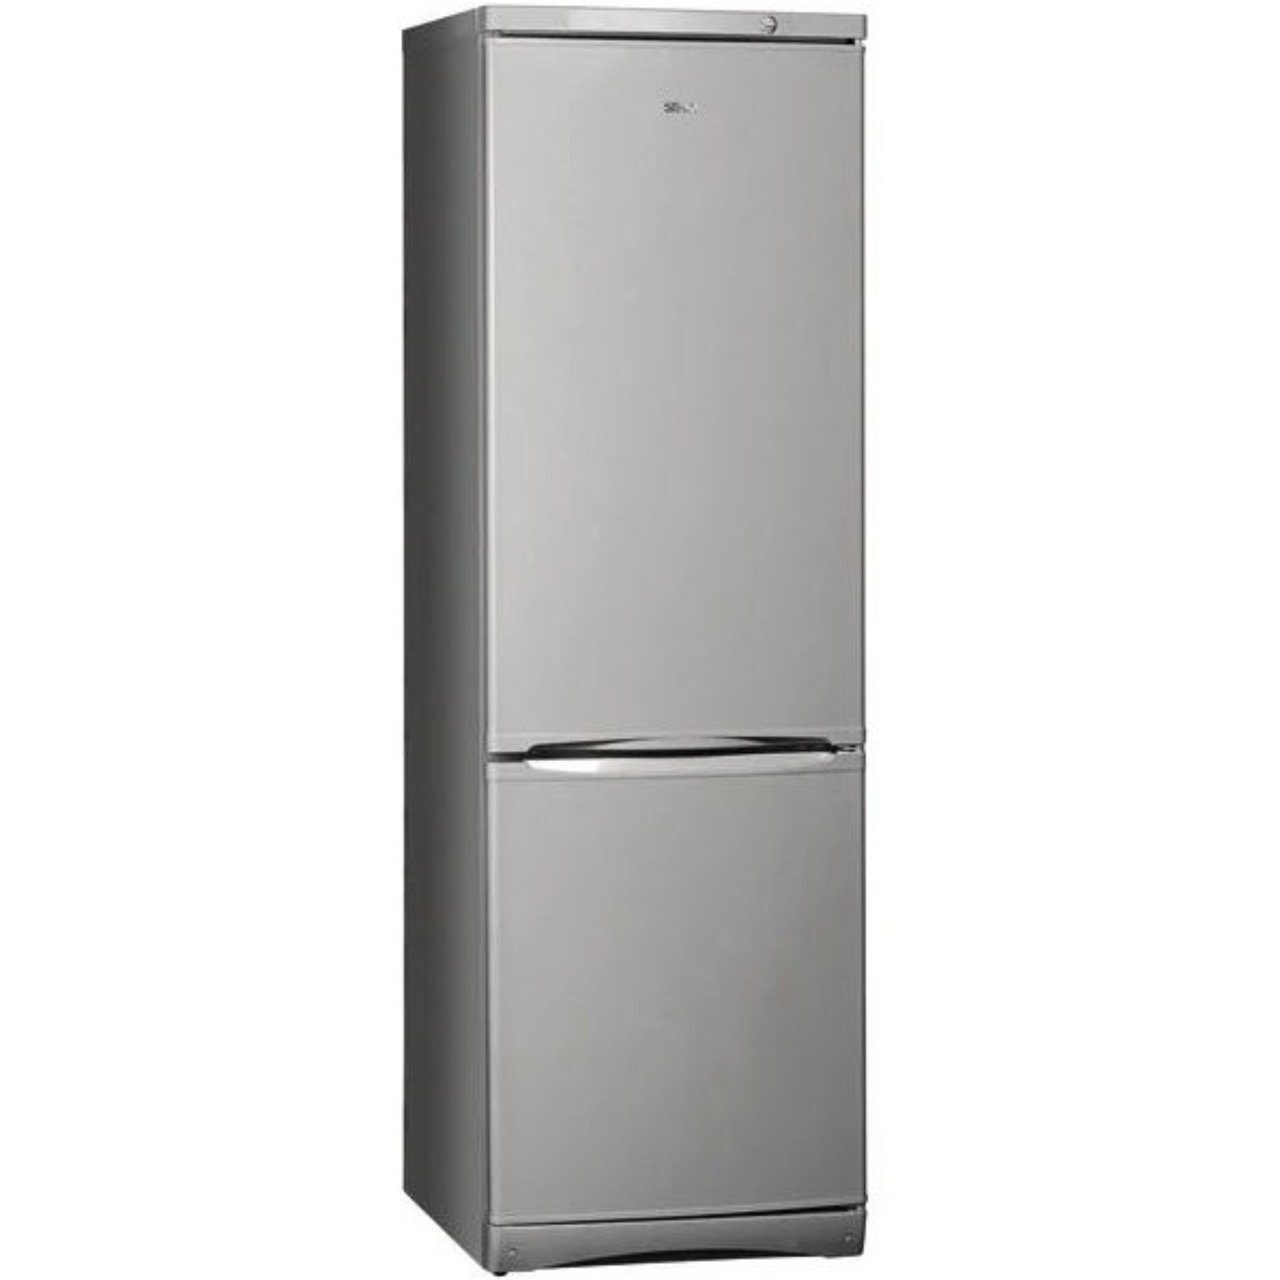 Купить холодильник в ярославле недорого. Холодильник Stinol STS 185. Холодильник Stinol STN 167. Холодильник Stinol STS 167 S. Холодильник Stinol STN 185.